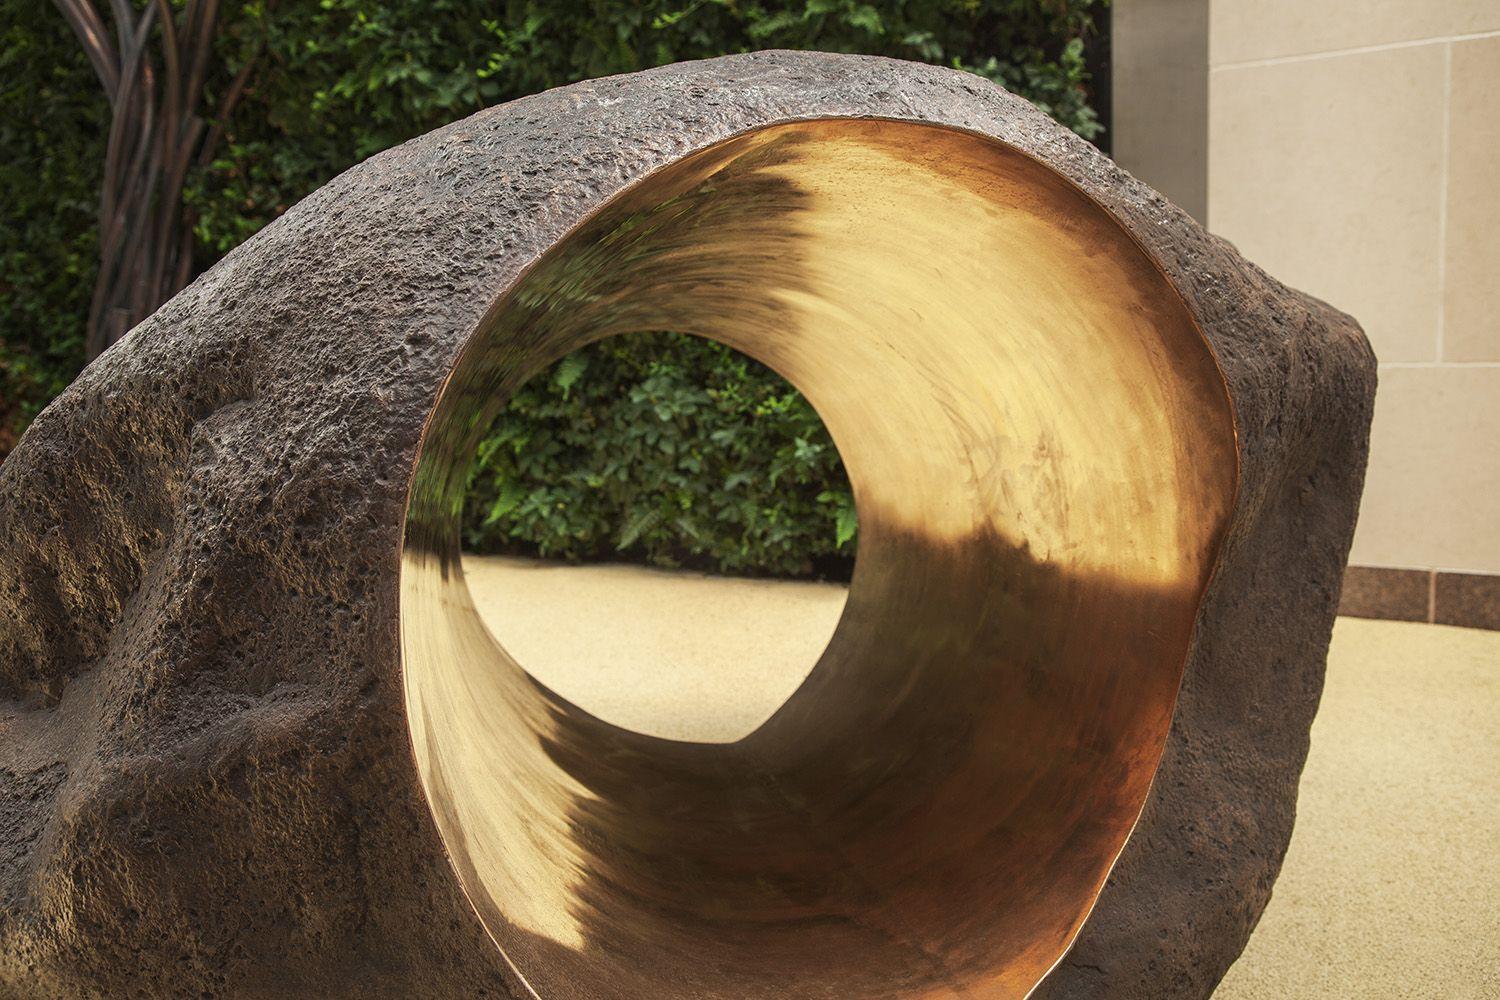 Boulder #3 - The Tunnel est une sculpture en bronze de l'artiste contemporain Tom Price, dont les dimensions sont de 90 × 150 × 140 cm (35,4 × 59,1 × 55,1 in). 
Cette œuvre est disponible sur commande. Il sera créé sur la même base que celle